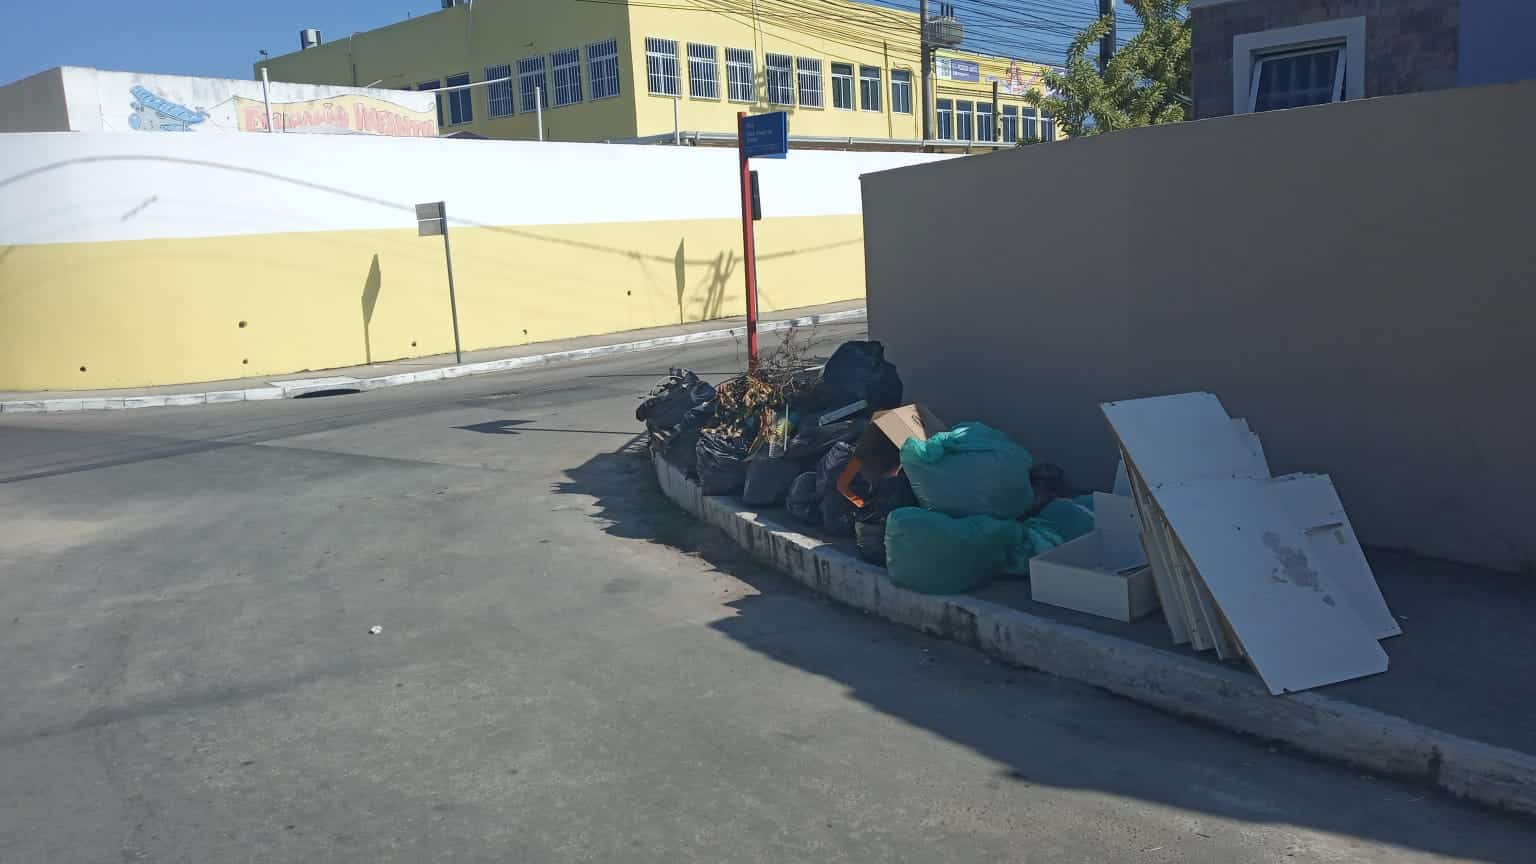 Prefeitura de Maricá peca na limpeza pública